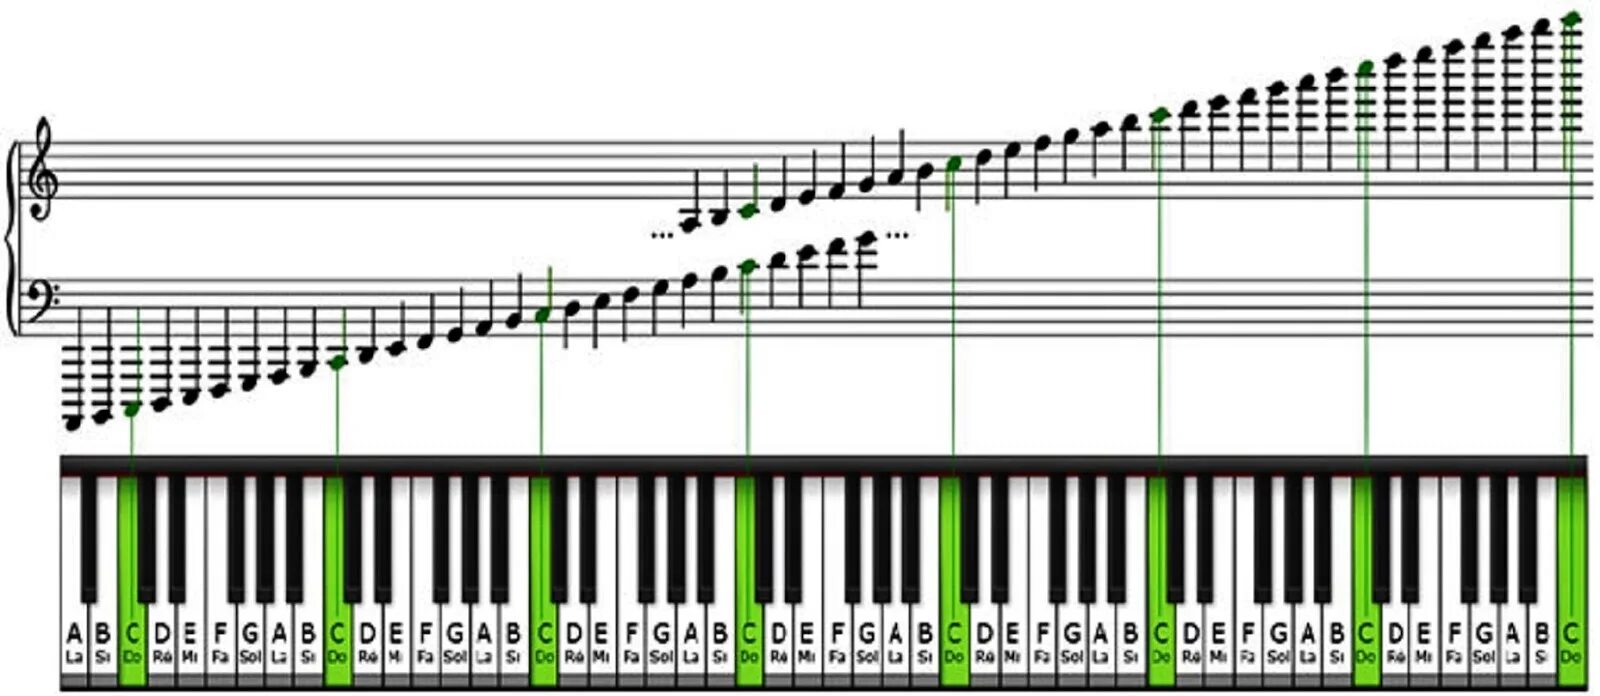 Взять октаву. Ноты на синтезаторе 61 клавиша. Диапазон фортепиано октавы. Расположение нот на клавишах синтезатора 61 клавиша. Расположение нот на синтезаторе 61 клавиша.